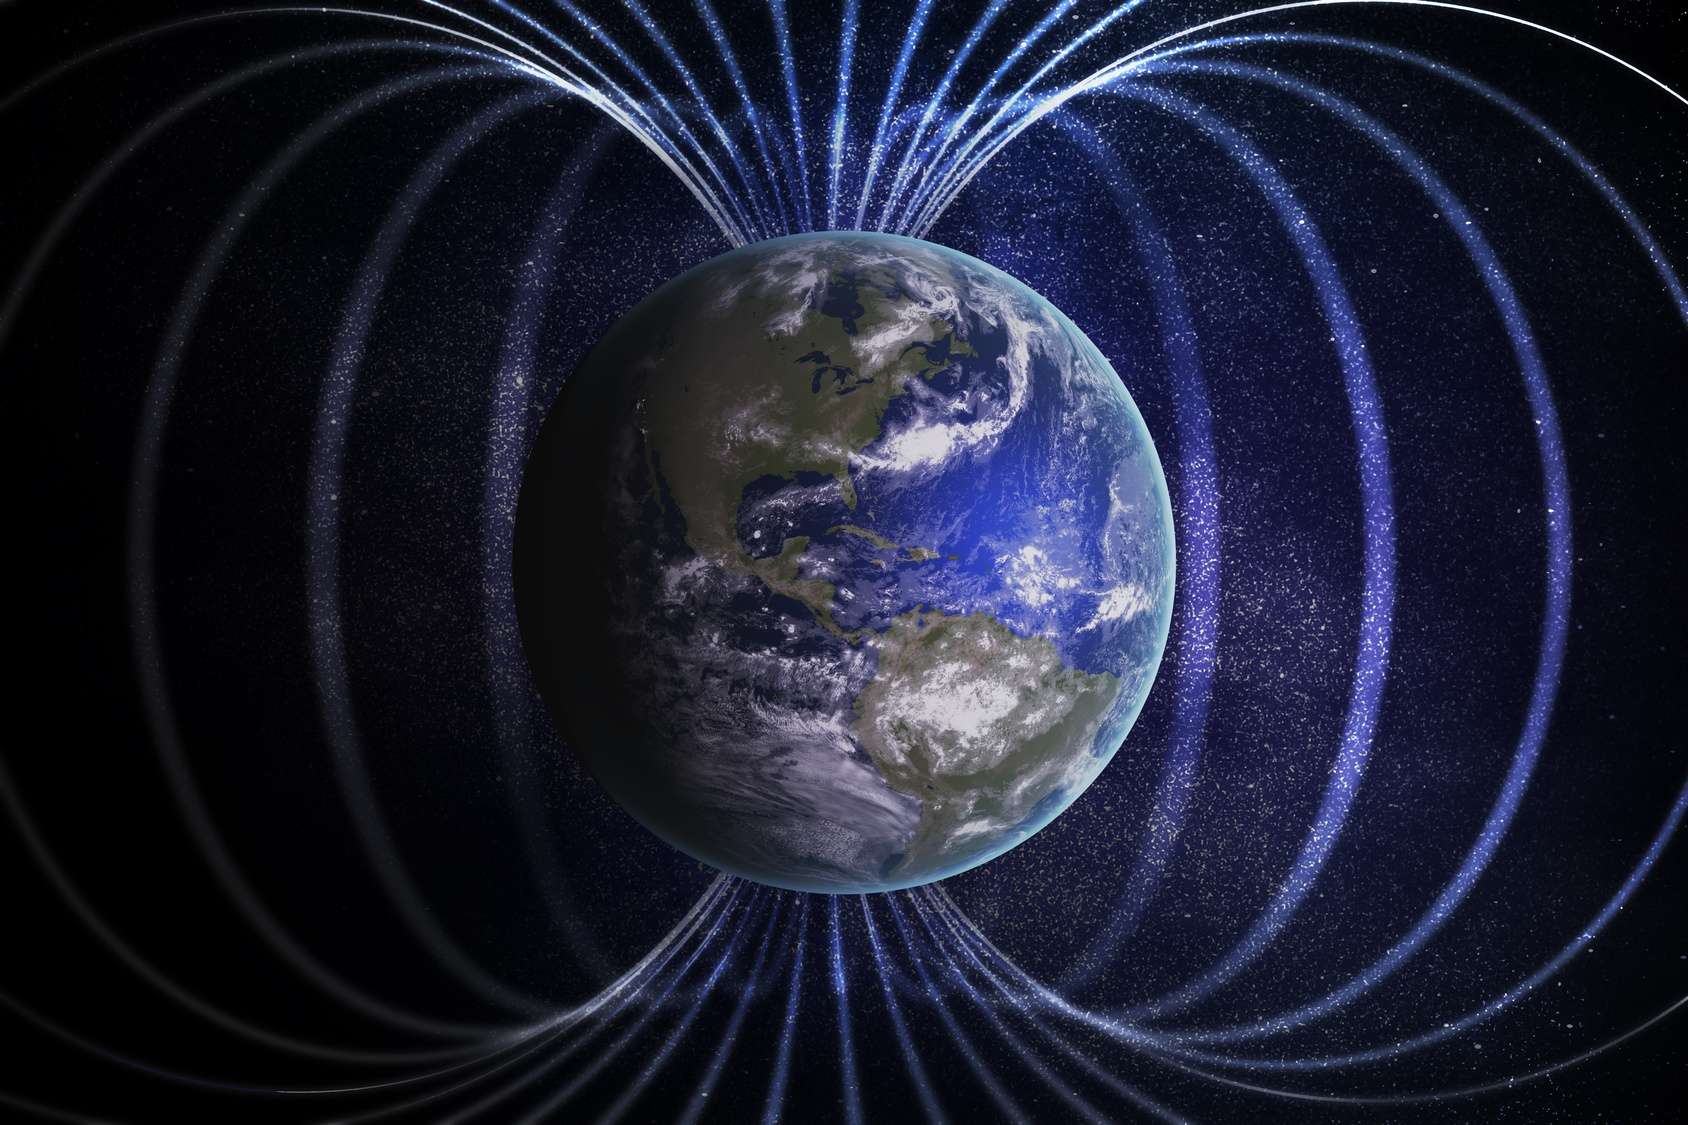 Grote anomalie in het aardmagnetisch veld eindelijk verklaard?